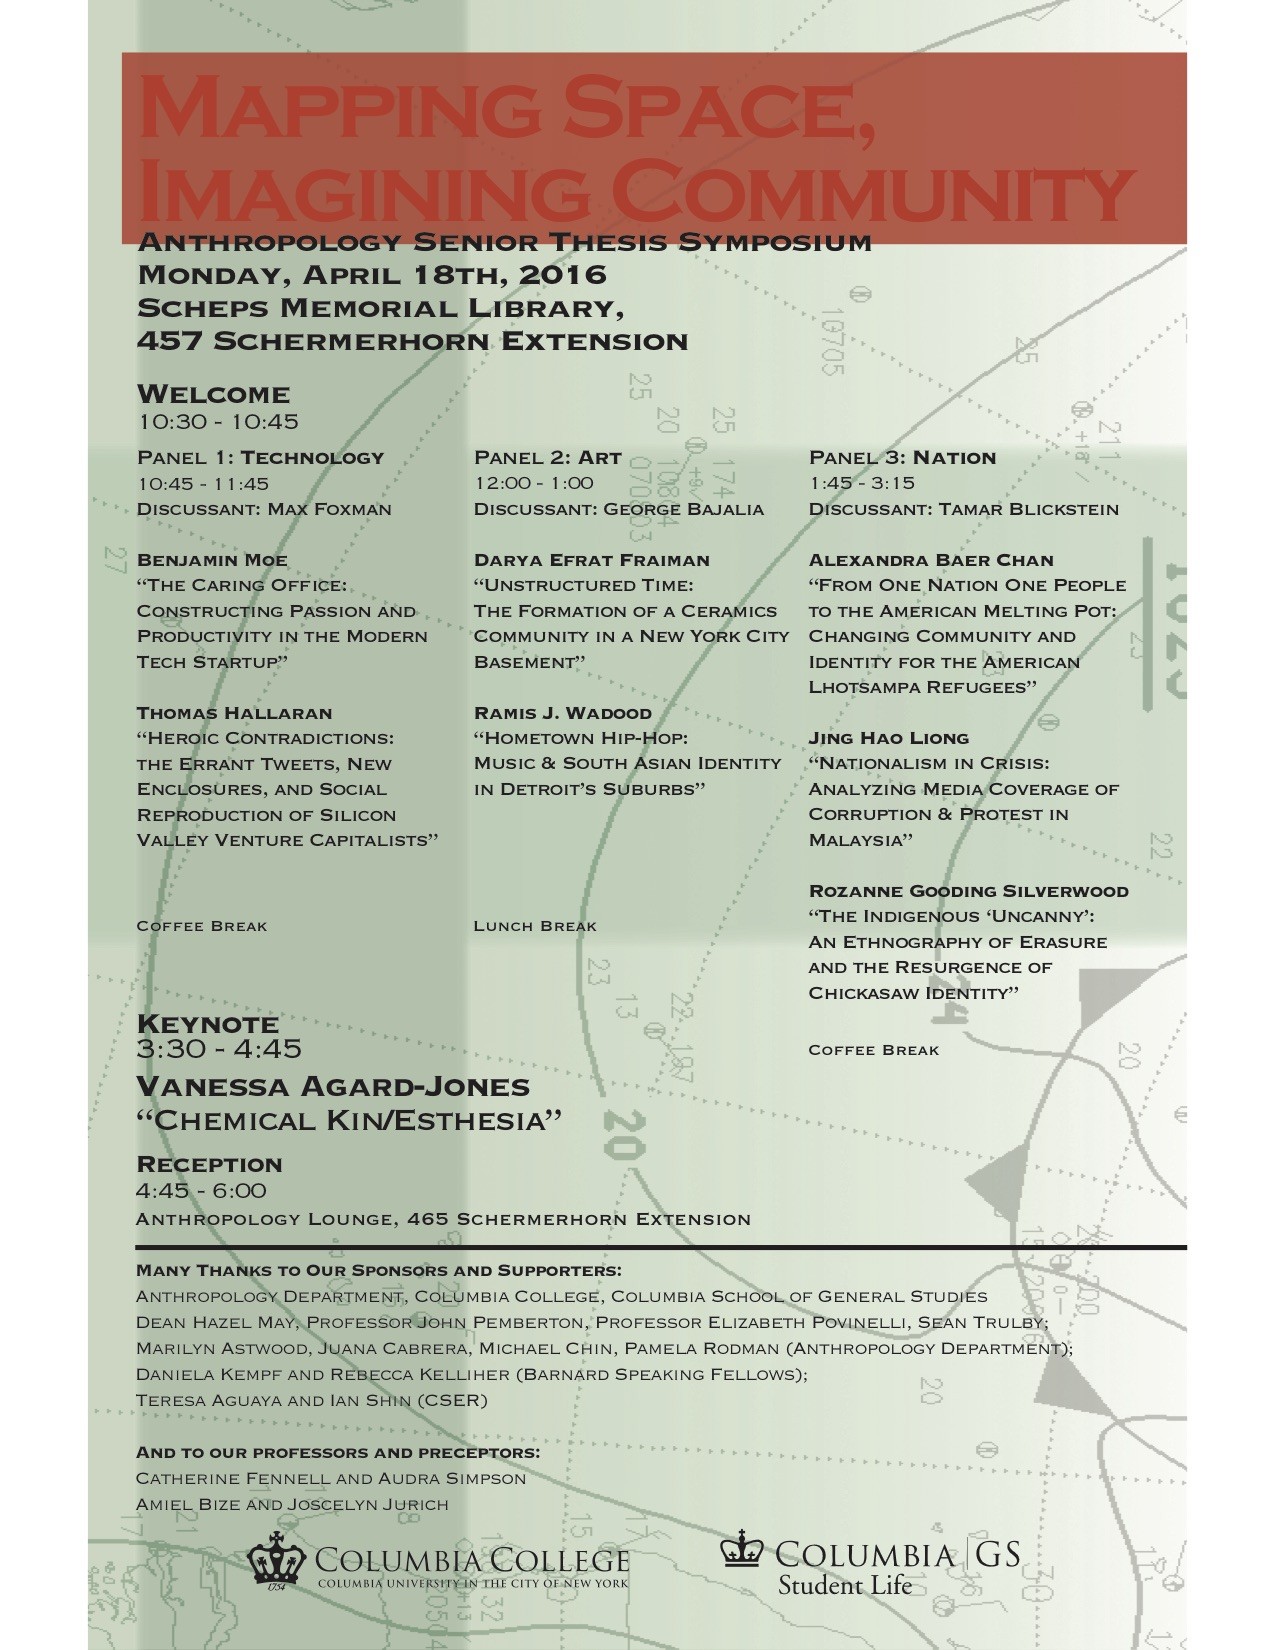 Symposium event poster.